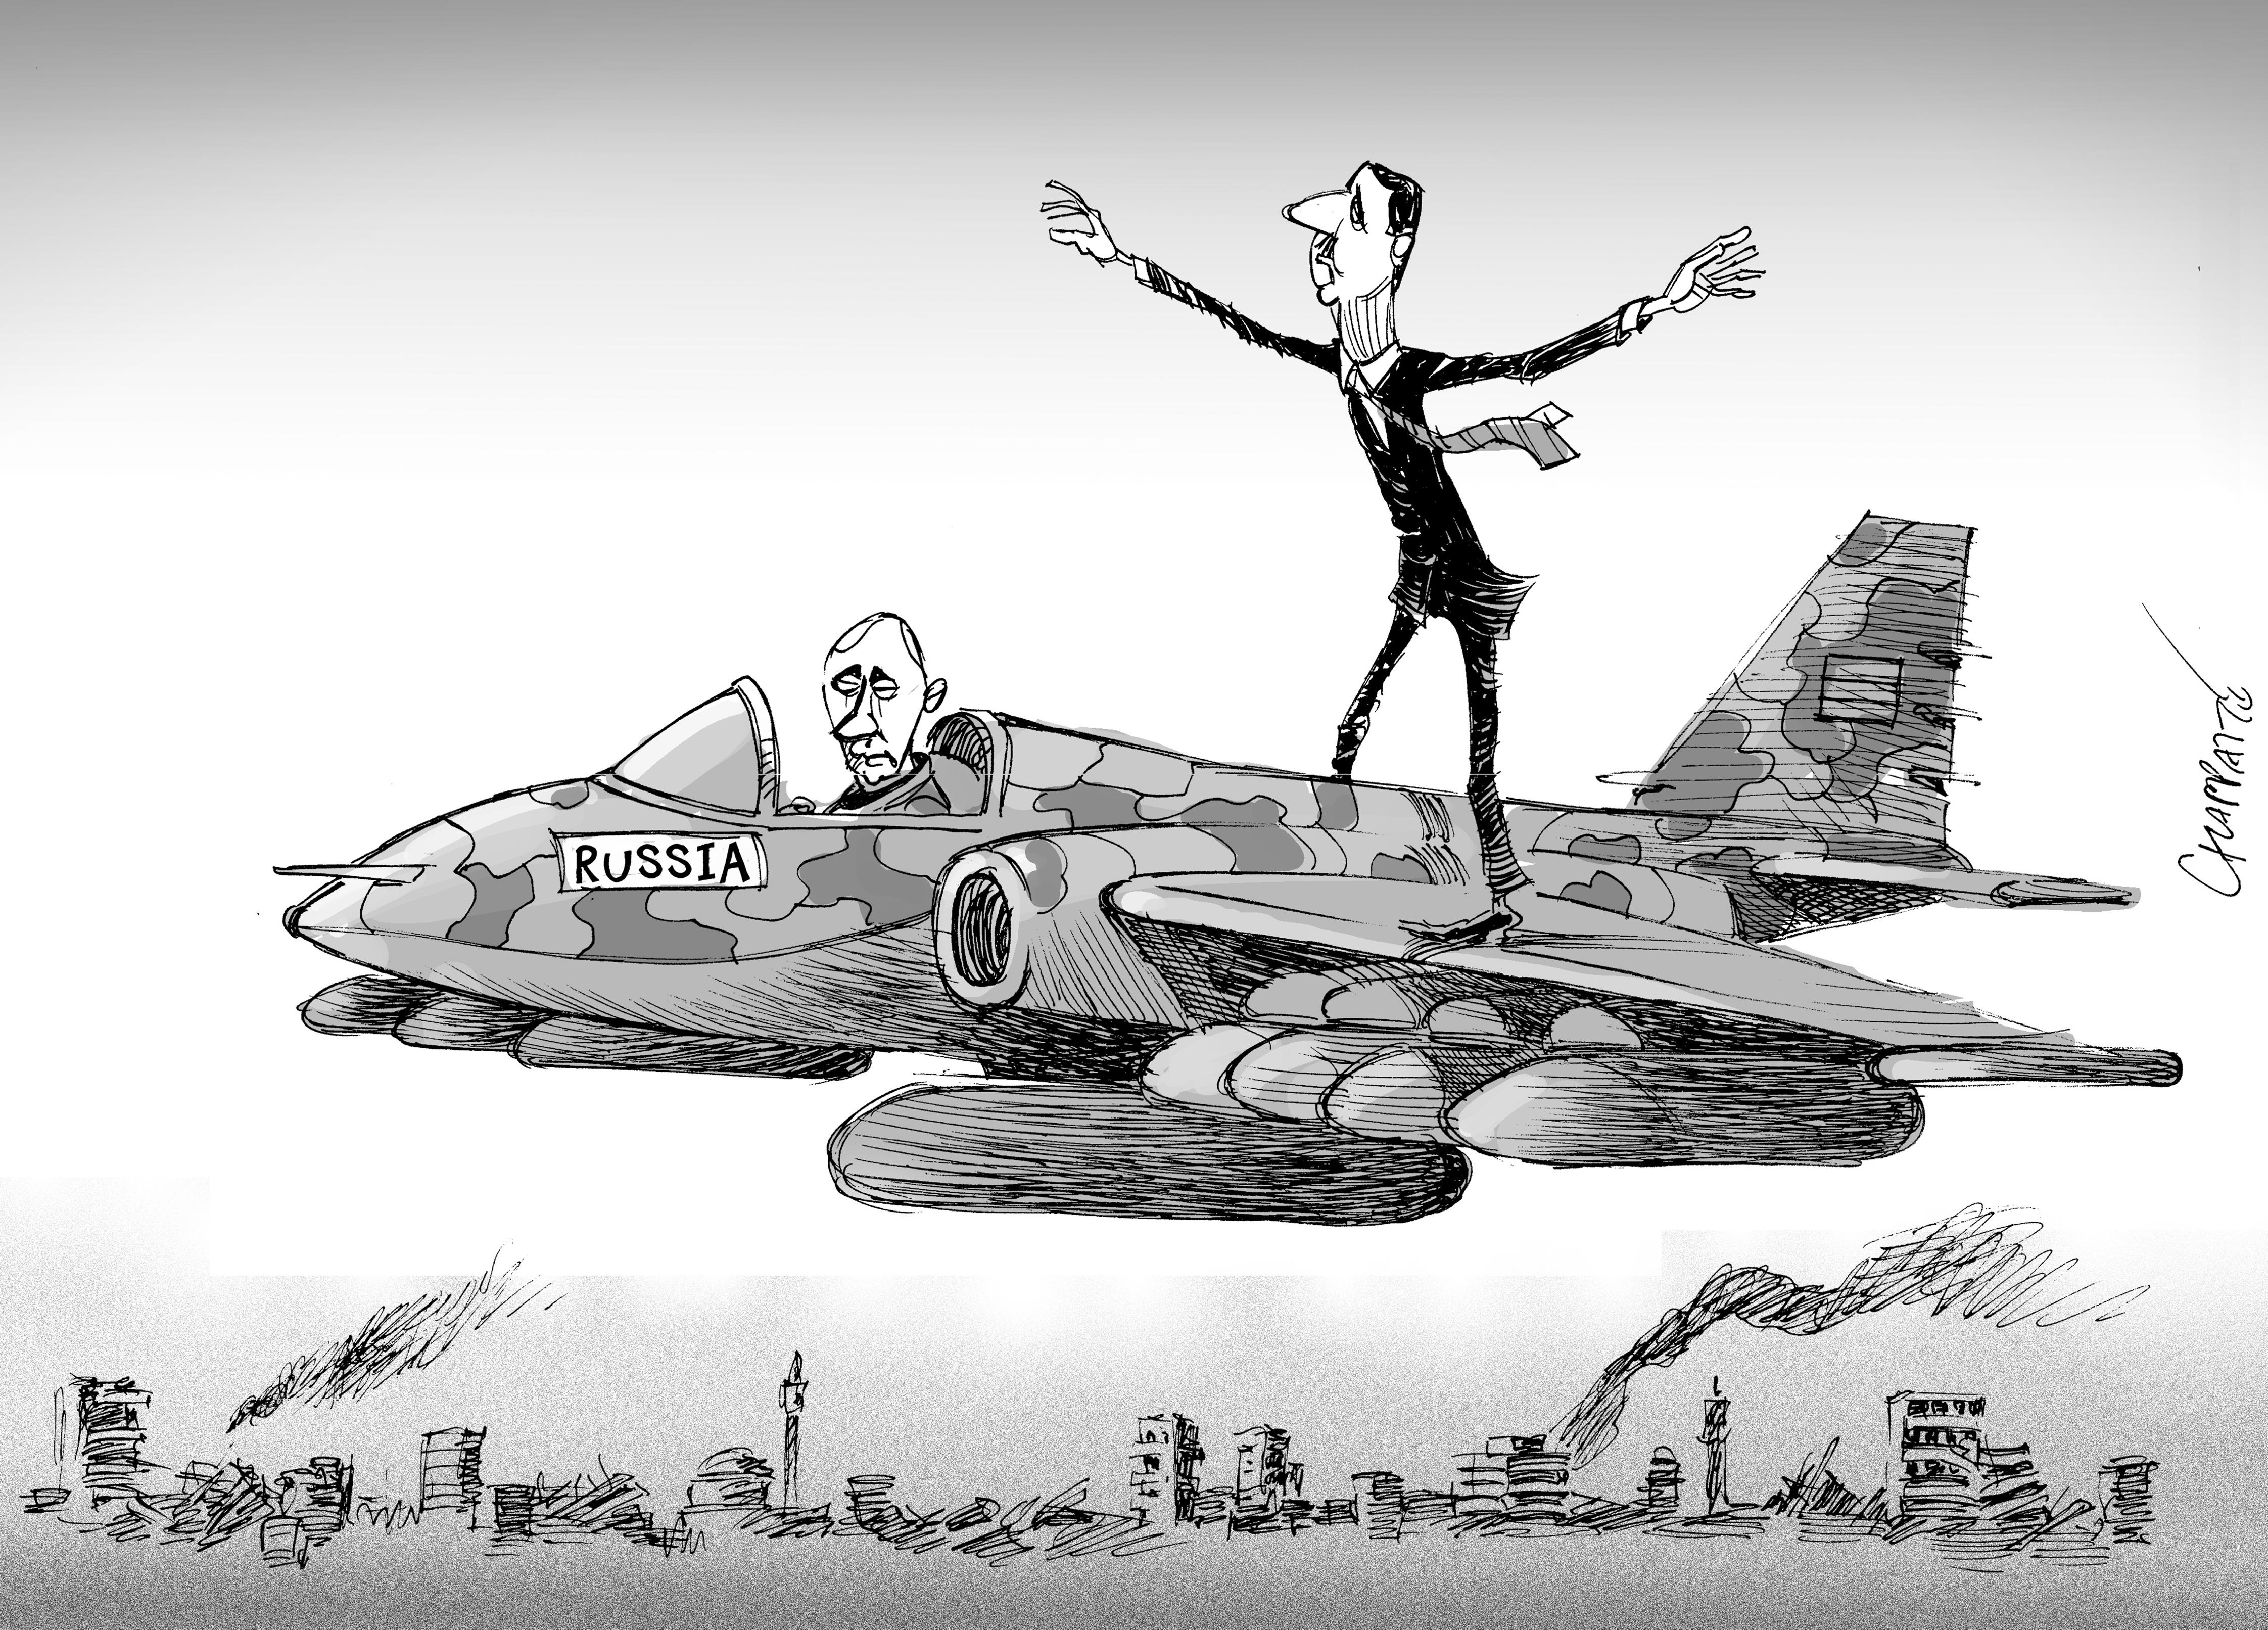 Putin and Bashar al-Assad